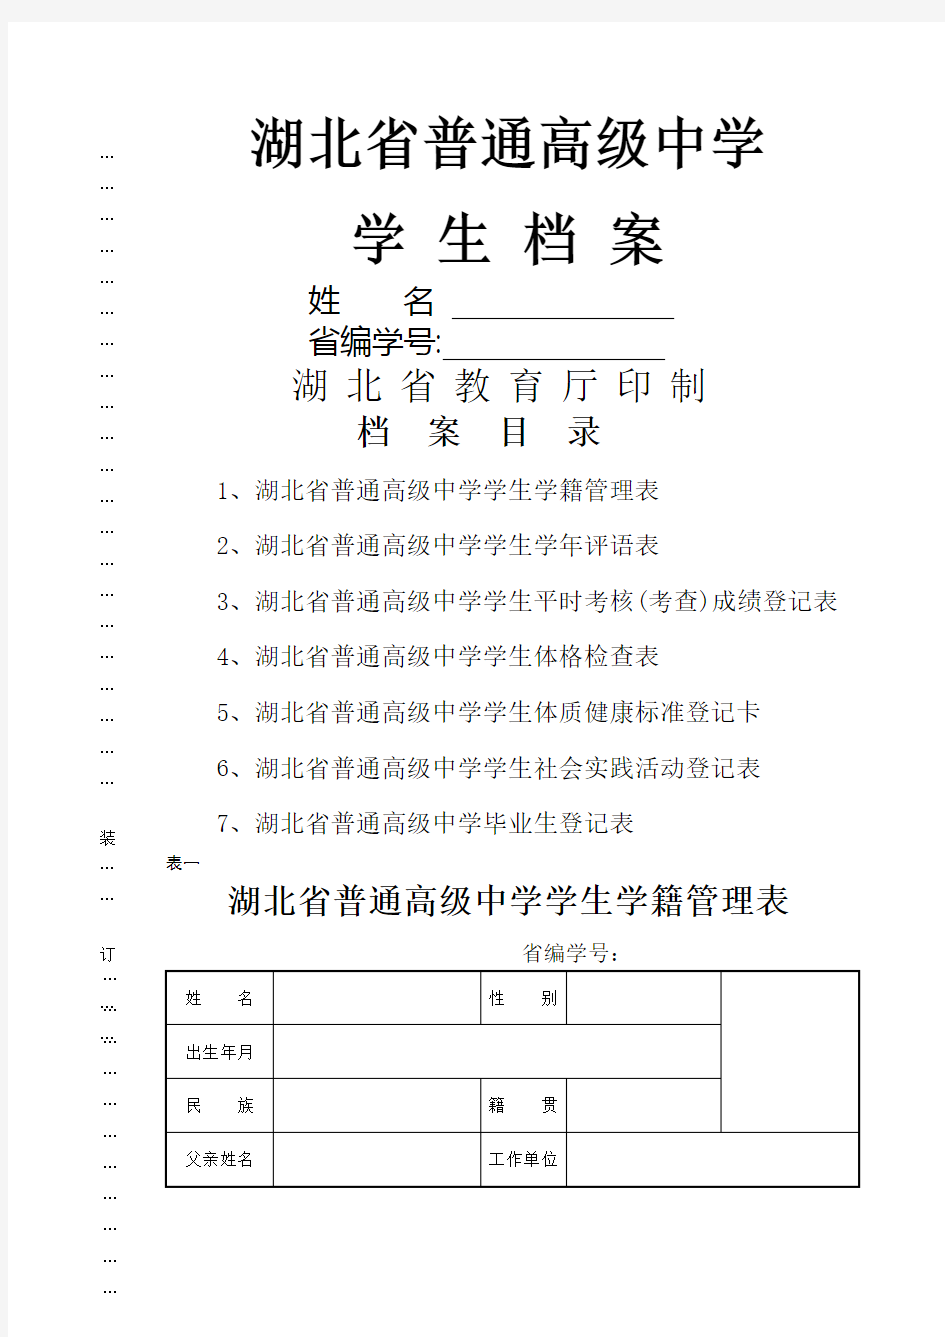 湖北省普通高级中学学生档案 (2)